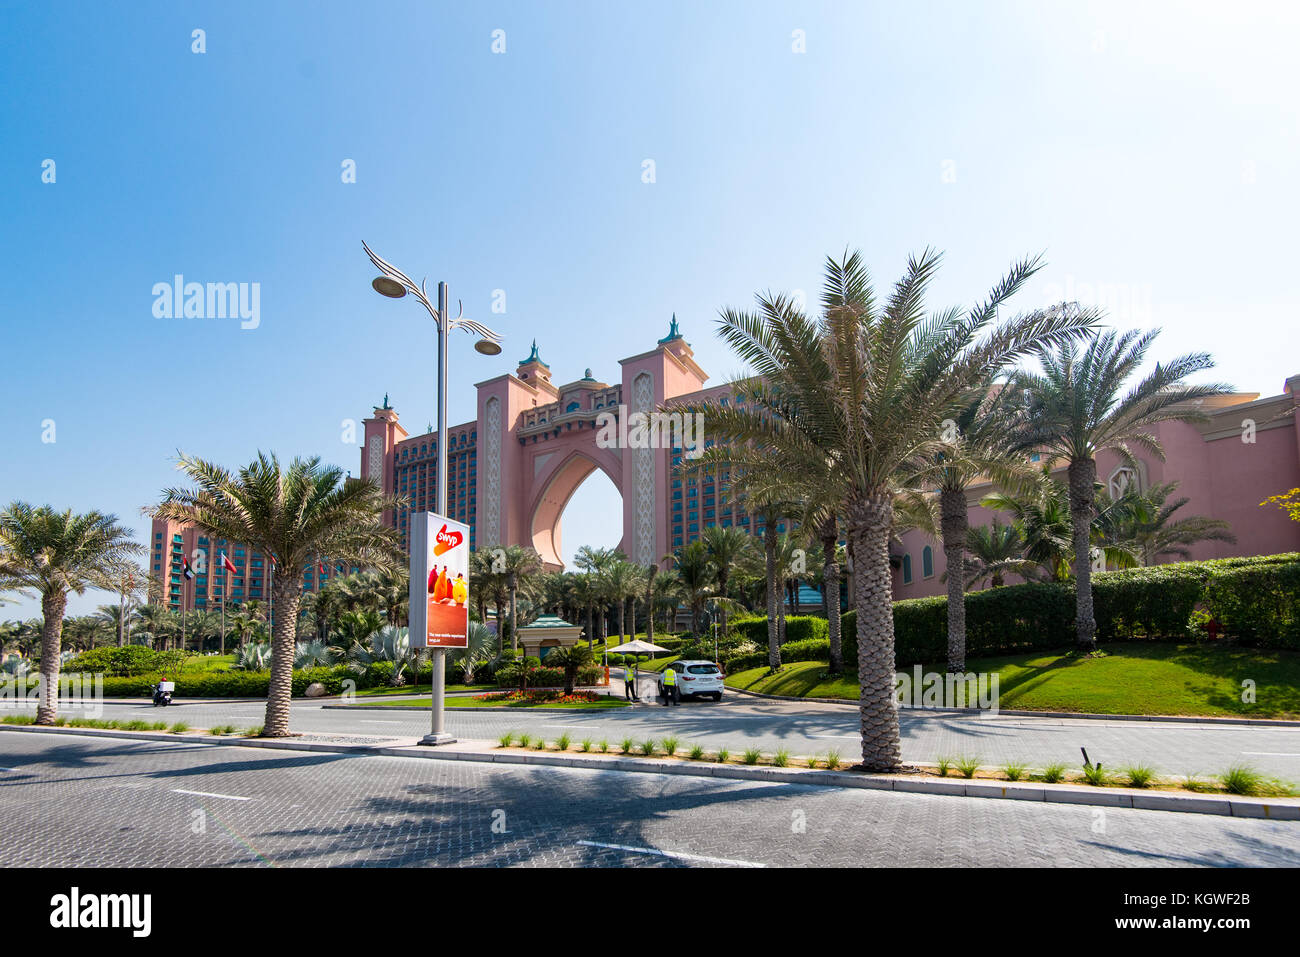 DUBAI, UAE - 31OCT2017: Atlantis the Palm. A luxury hotel on The Palm Jumeriah, Dubai. Stock Photo